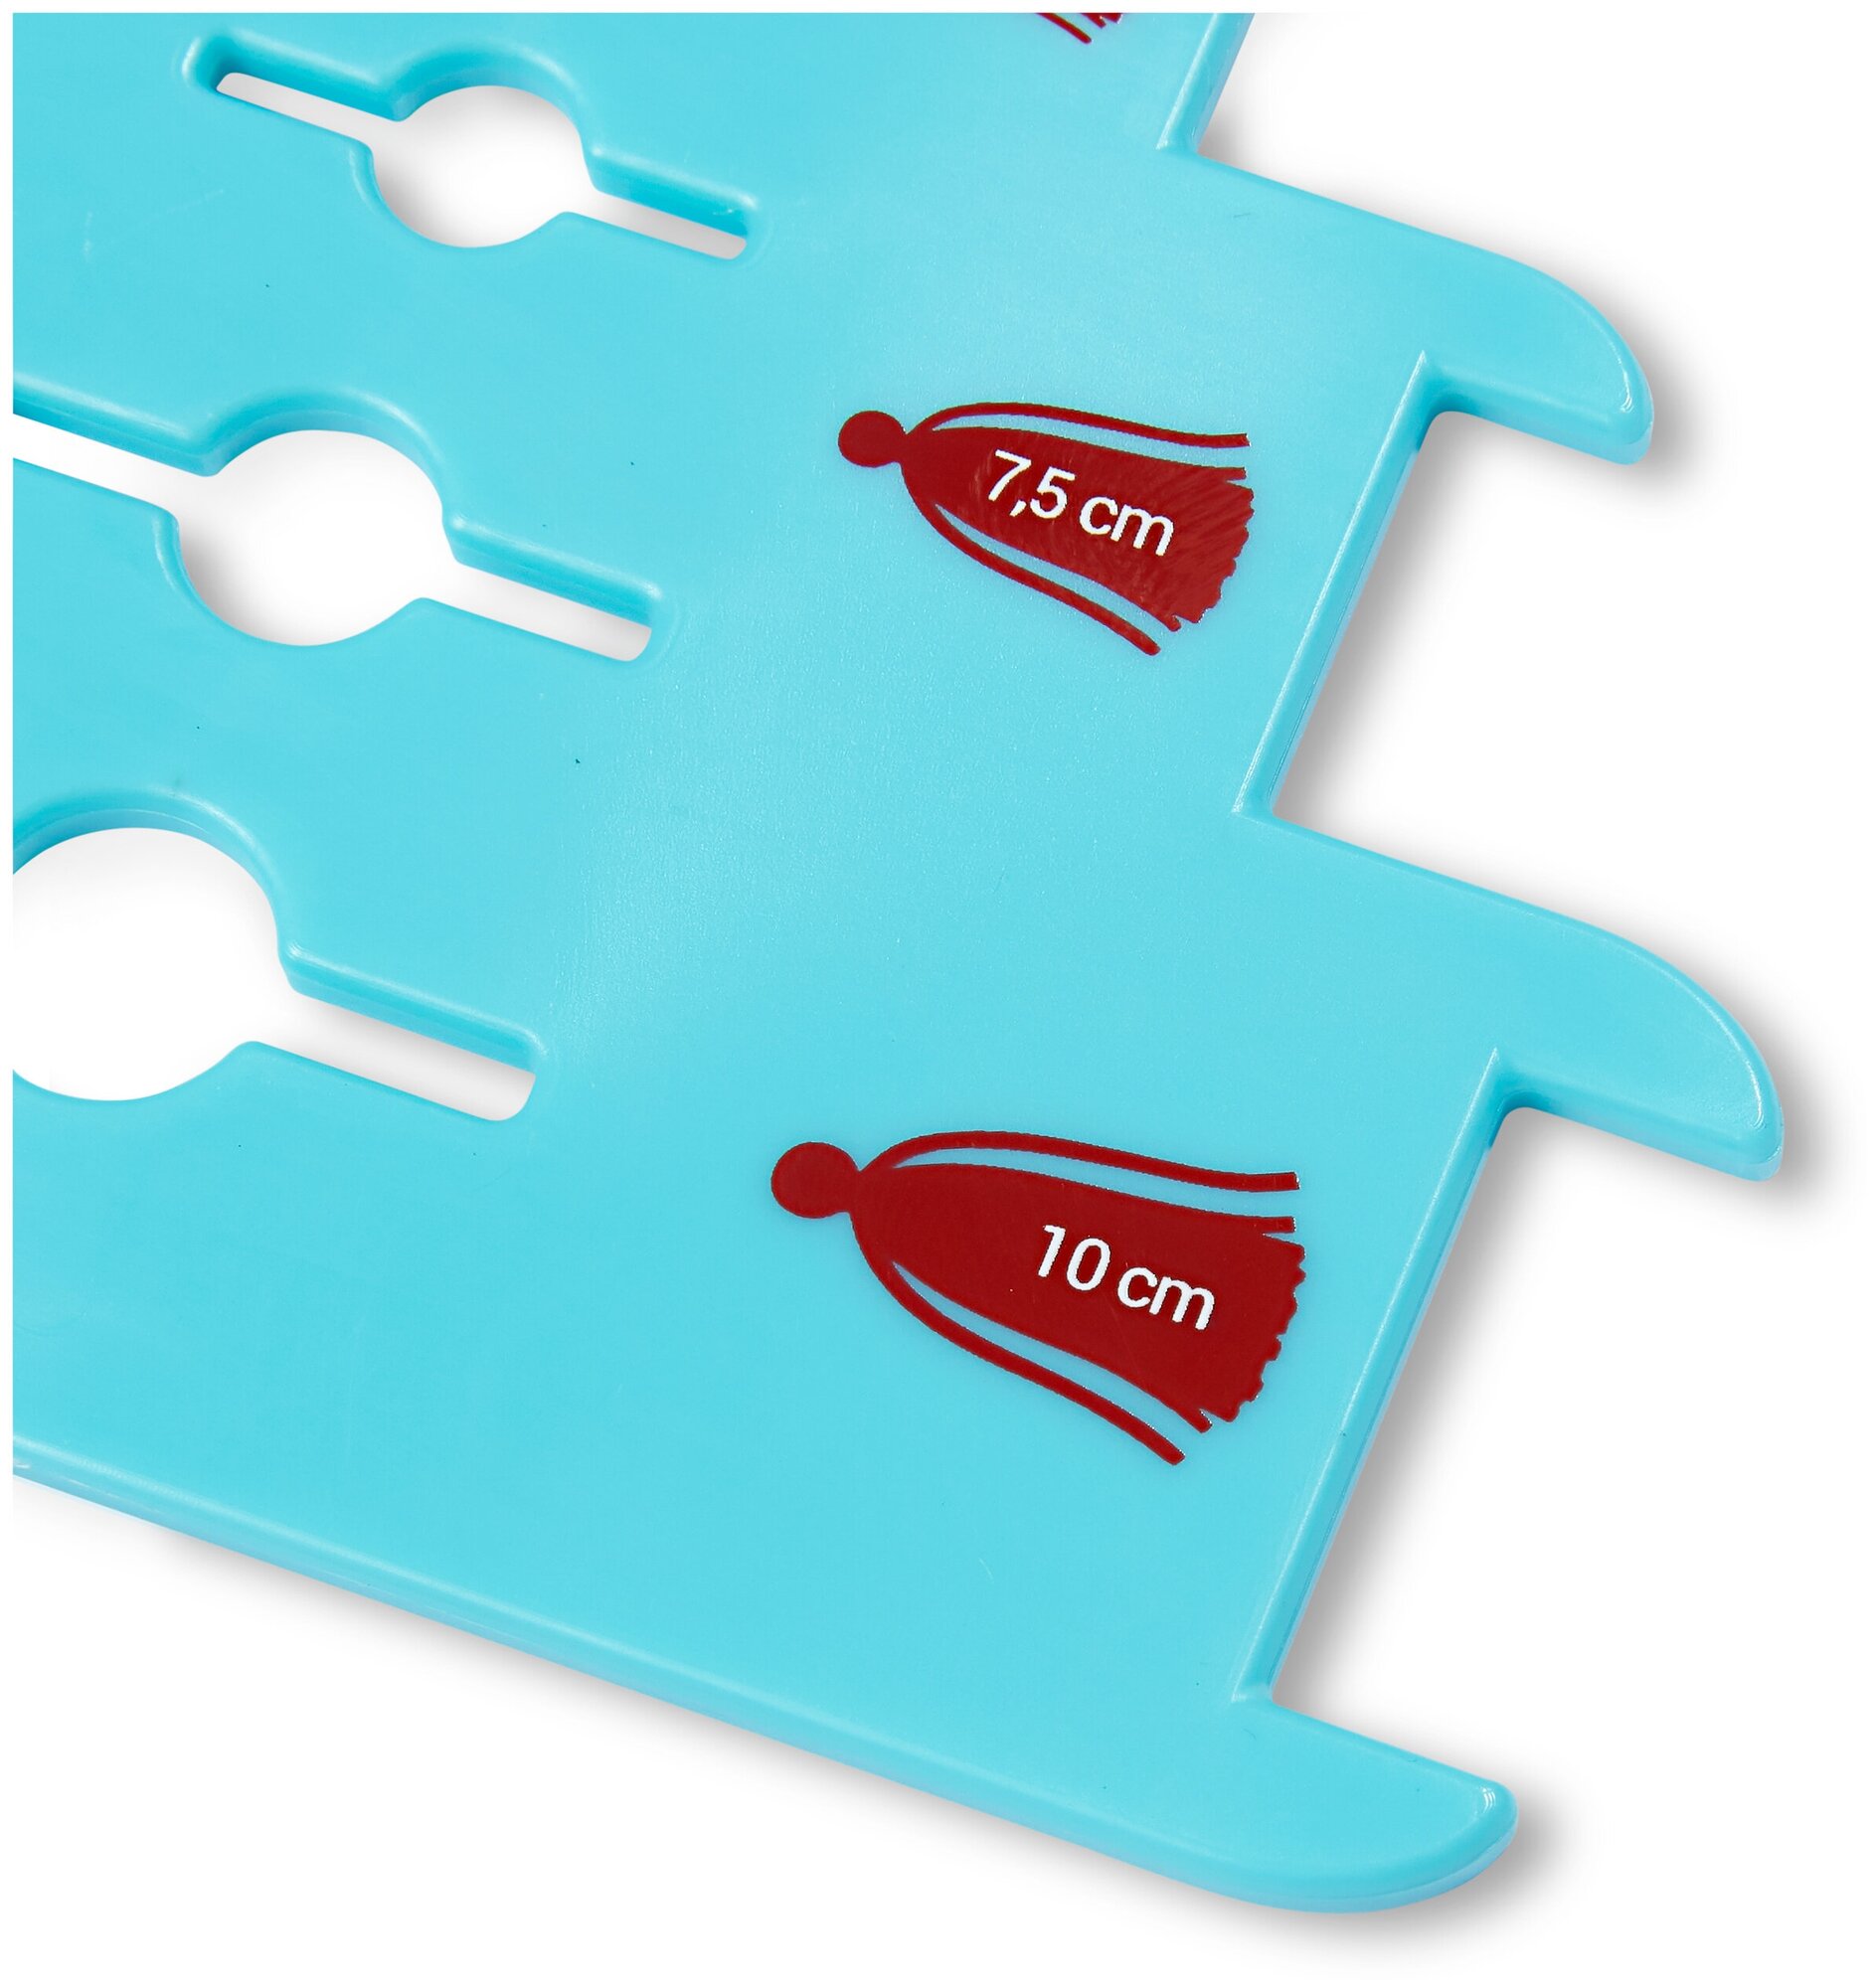 Инструменты для вязания PRYM устройство для изгот. кистей 624191 пластик в пакете 10 см, 7.5 см, 5 см